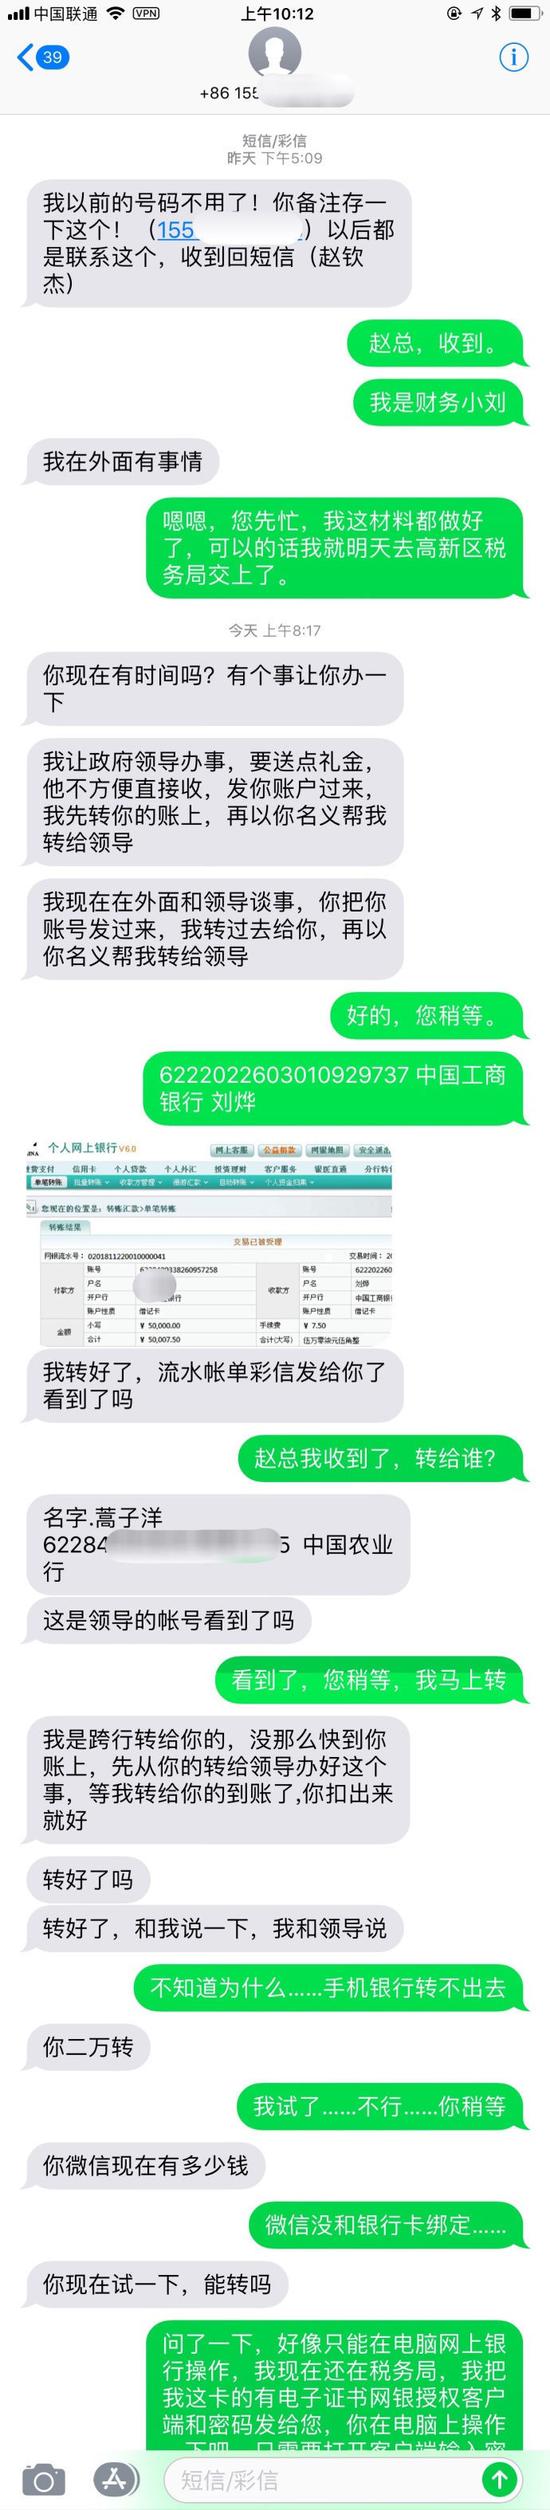 北京时间:程序员遇上电信诈骗犯 一步步下套成功反制(图)